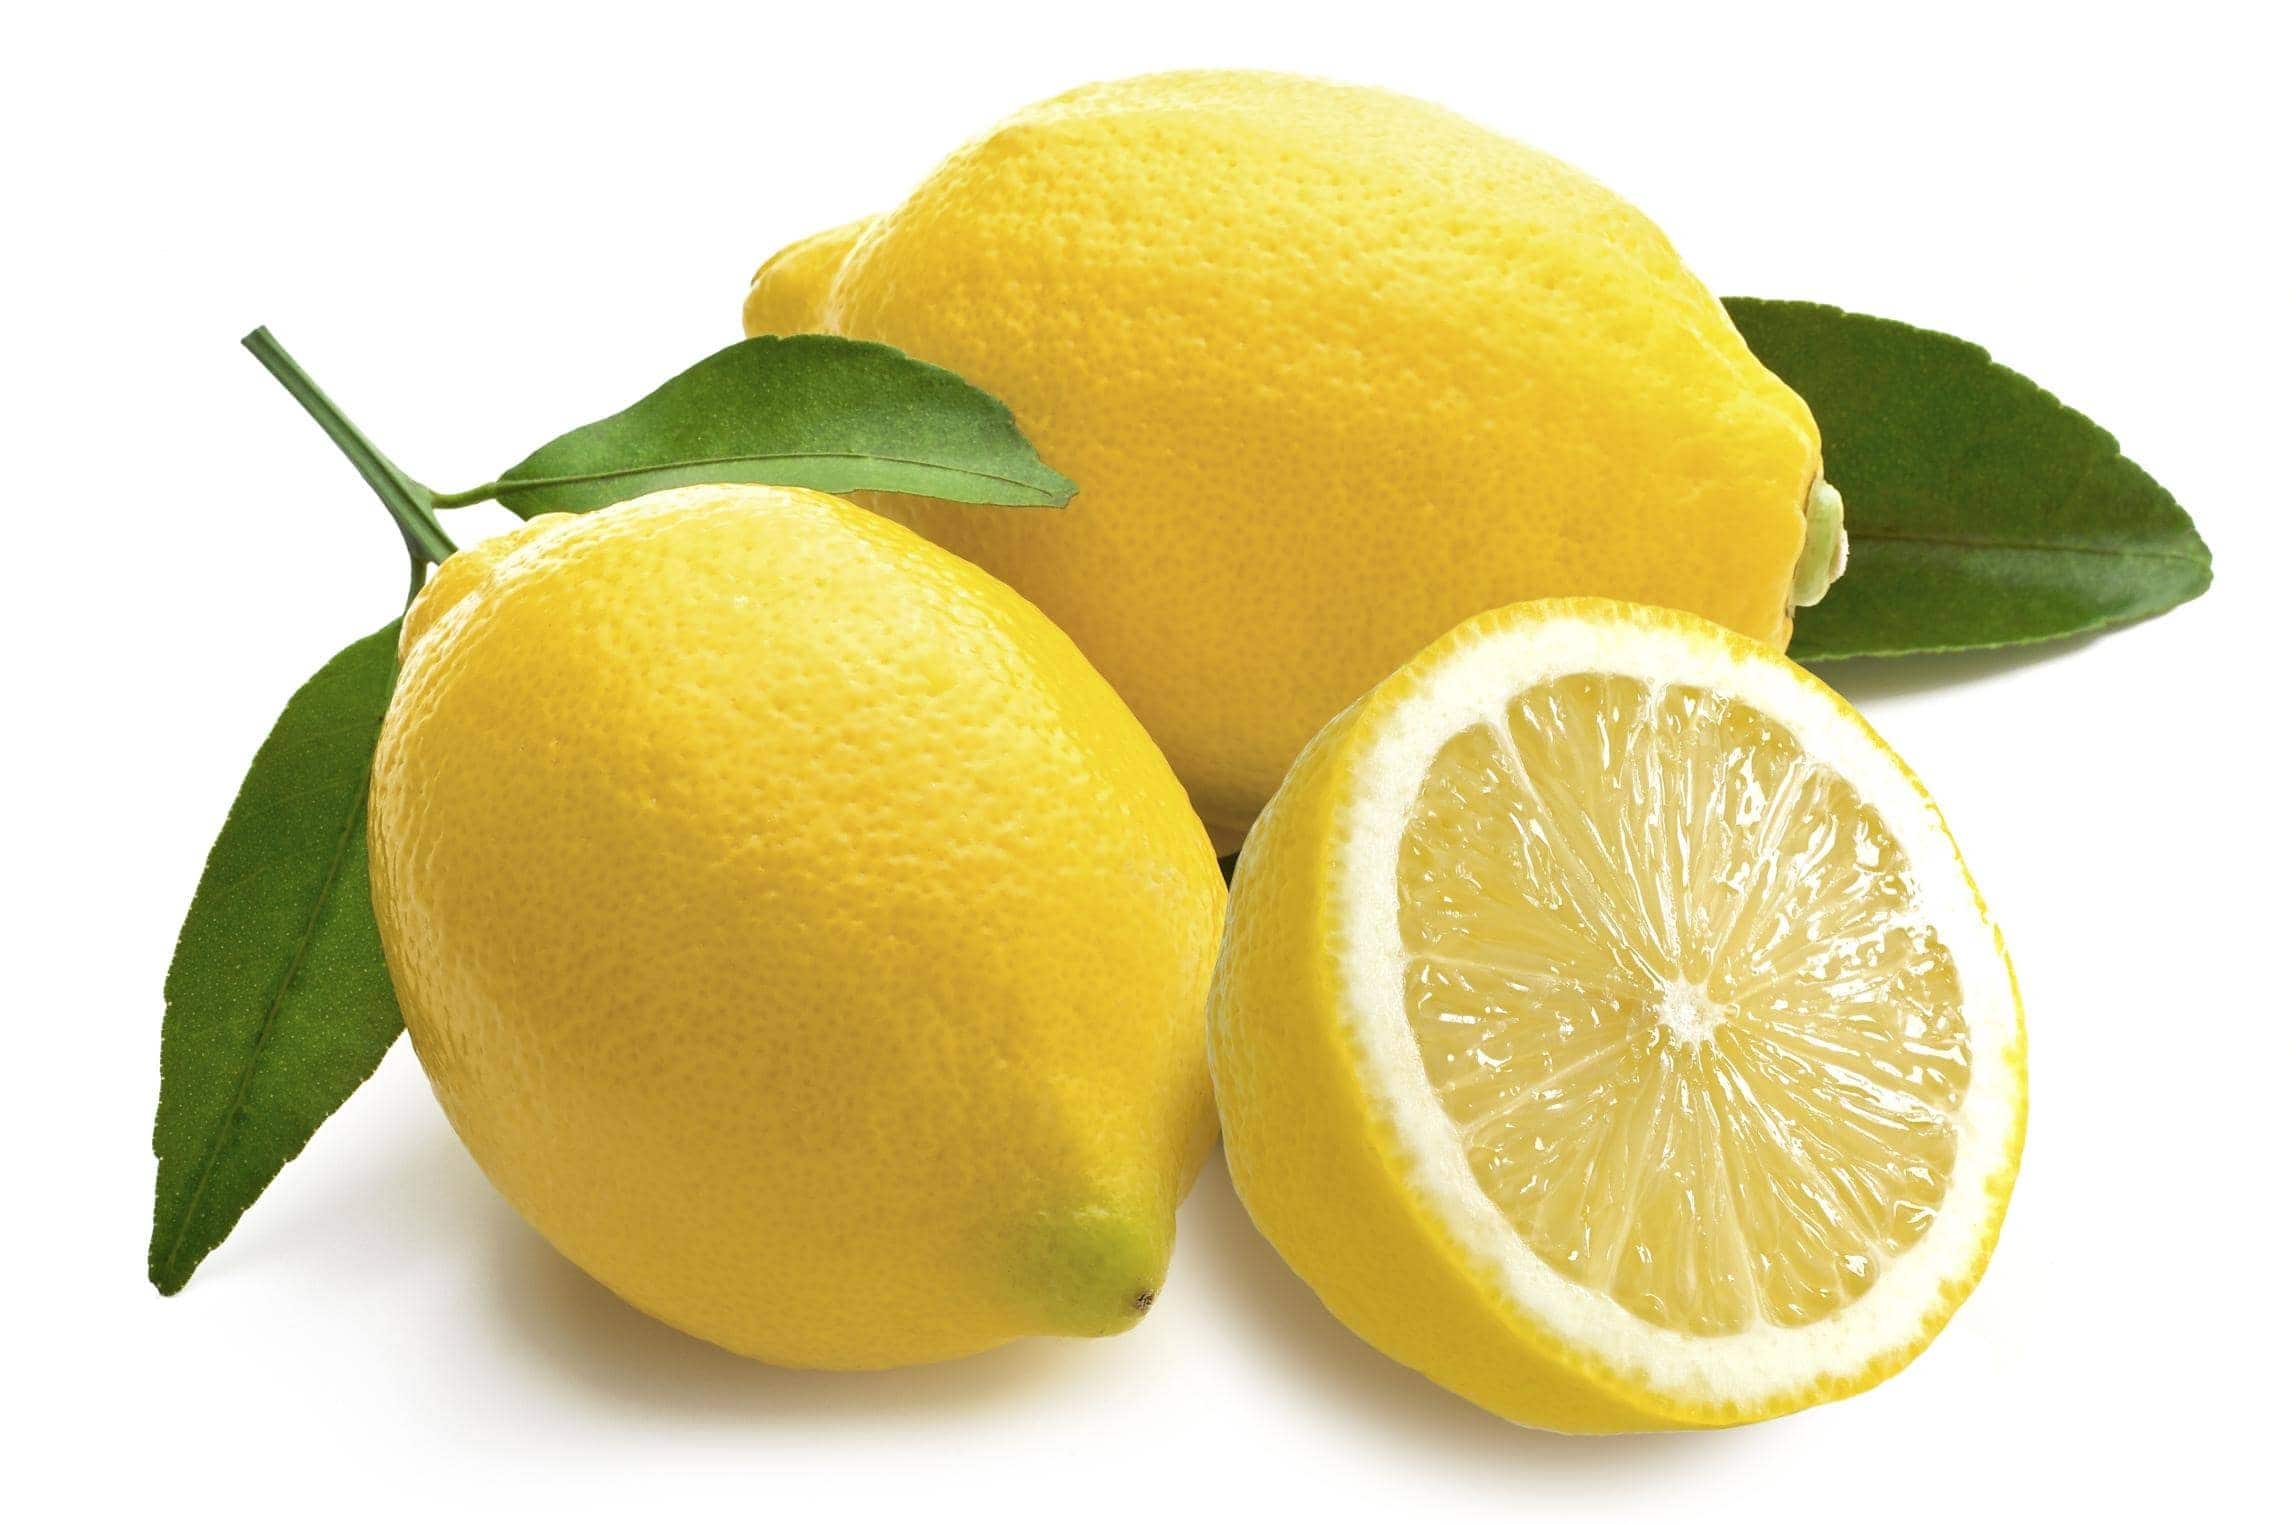 lemon dream meaning, dream about lemon, lemon dream interpretation, seeing in a dream lemon